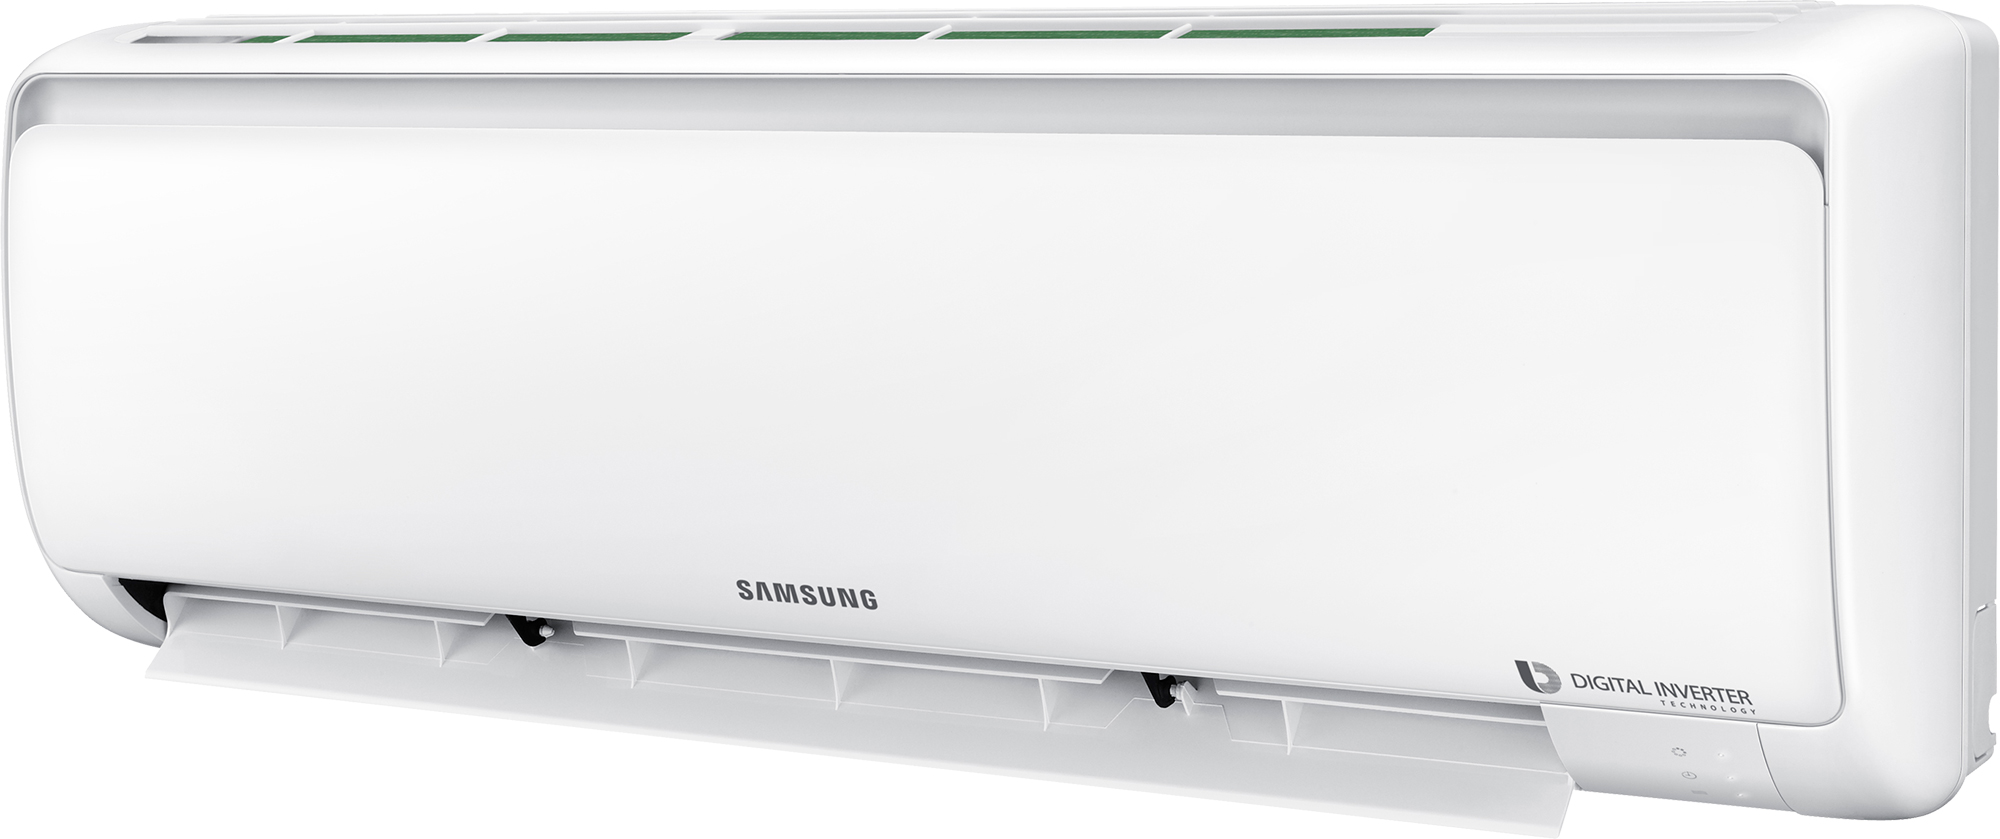 Кондиционер сплит-система Samsung AR09RSFPAWQNER / AR09RSFPAWQXER обзор - фото 8